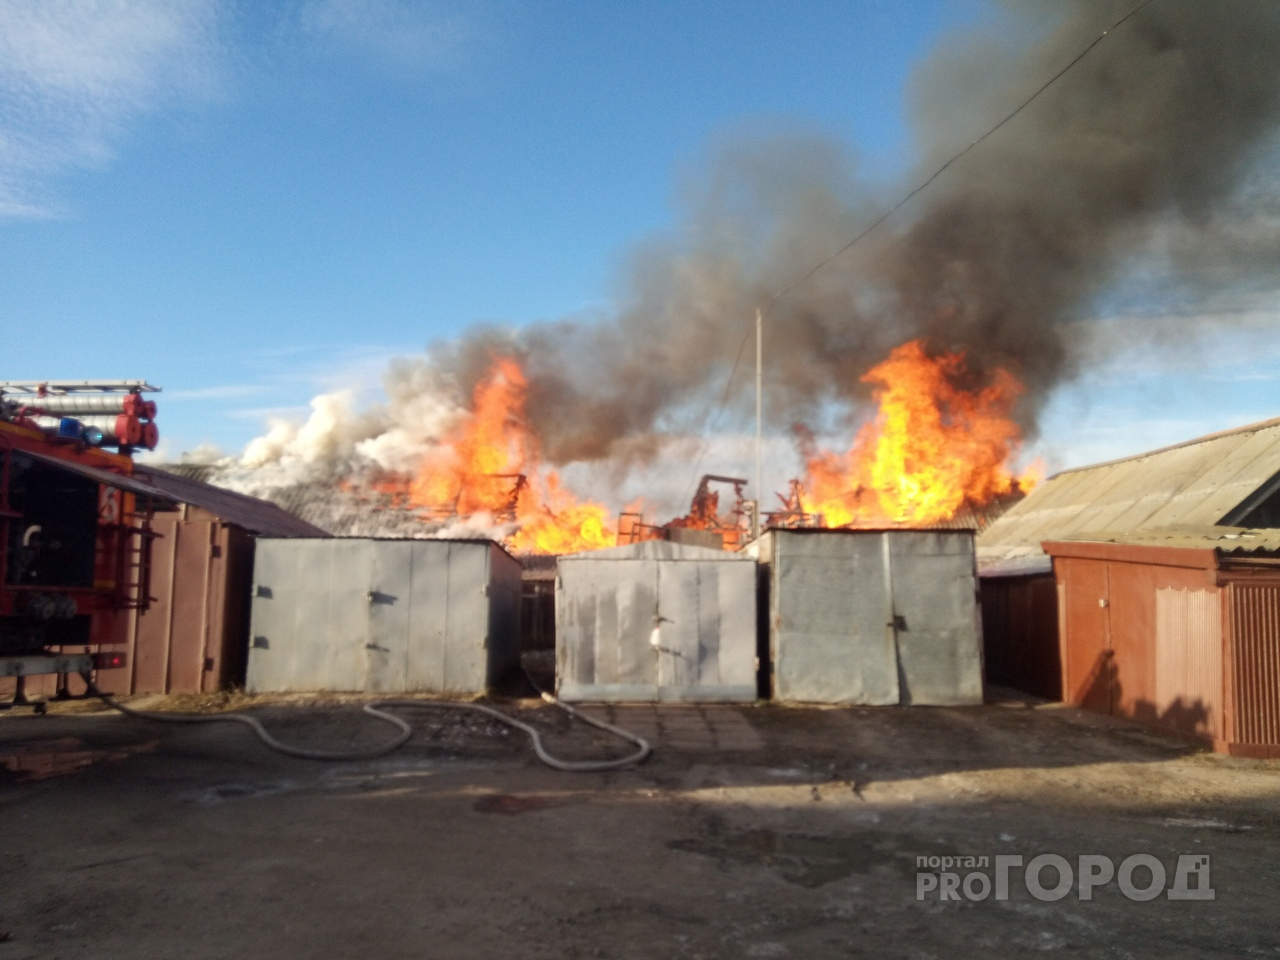 Жители поселка в Марий Эл в панике собрались у горящих сараек